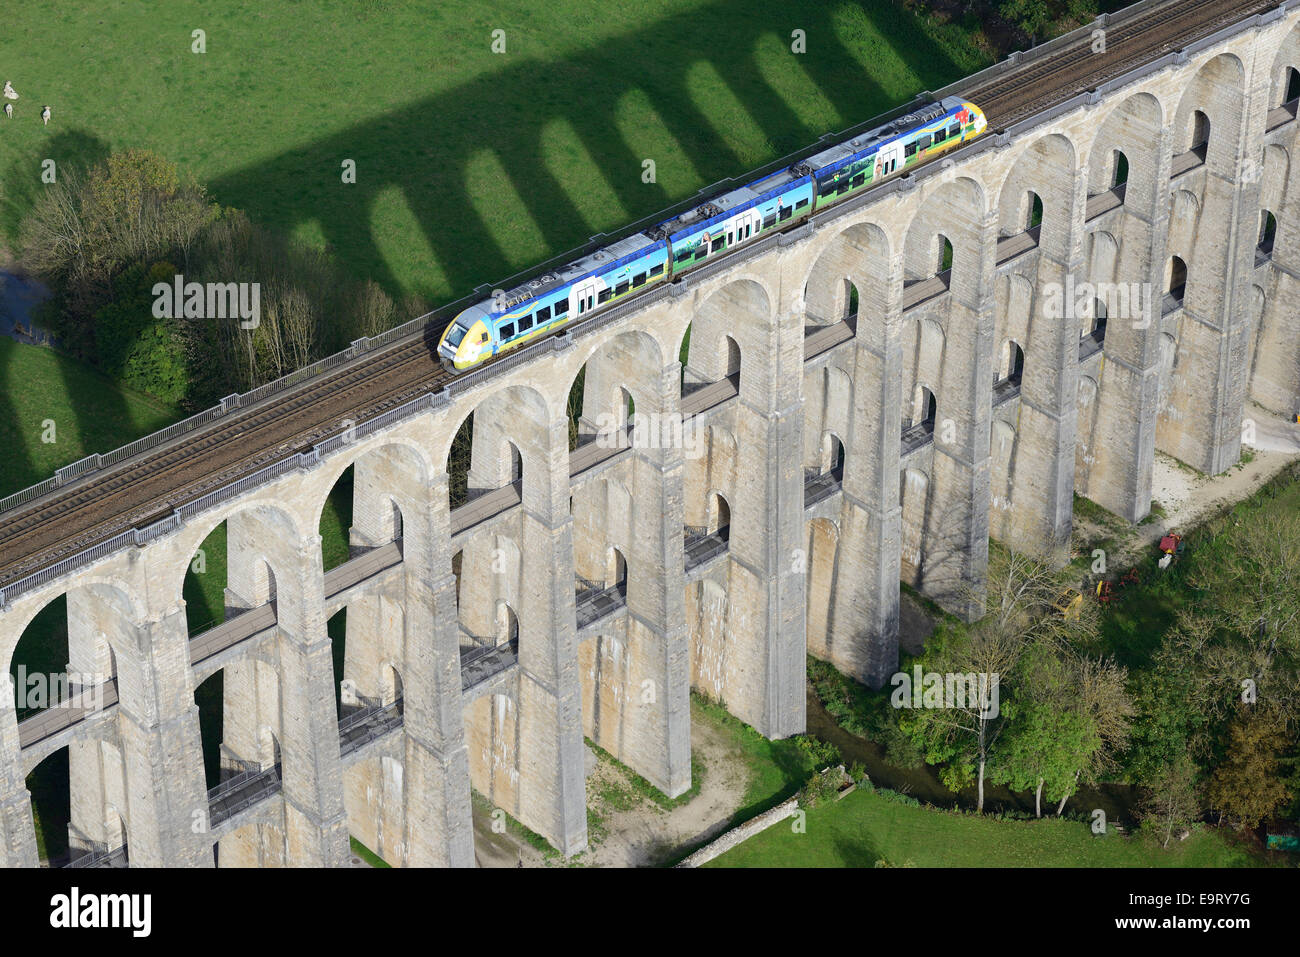 VISTA AEREA. Treno pendolare su un viadotto storico (inaugurato nel 1856) arco di pietra. Chaumont, Haute-Marne, Champagne-Ardenne, Grand Est, Francia. Foto Stock